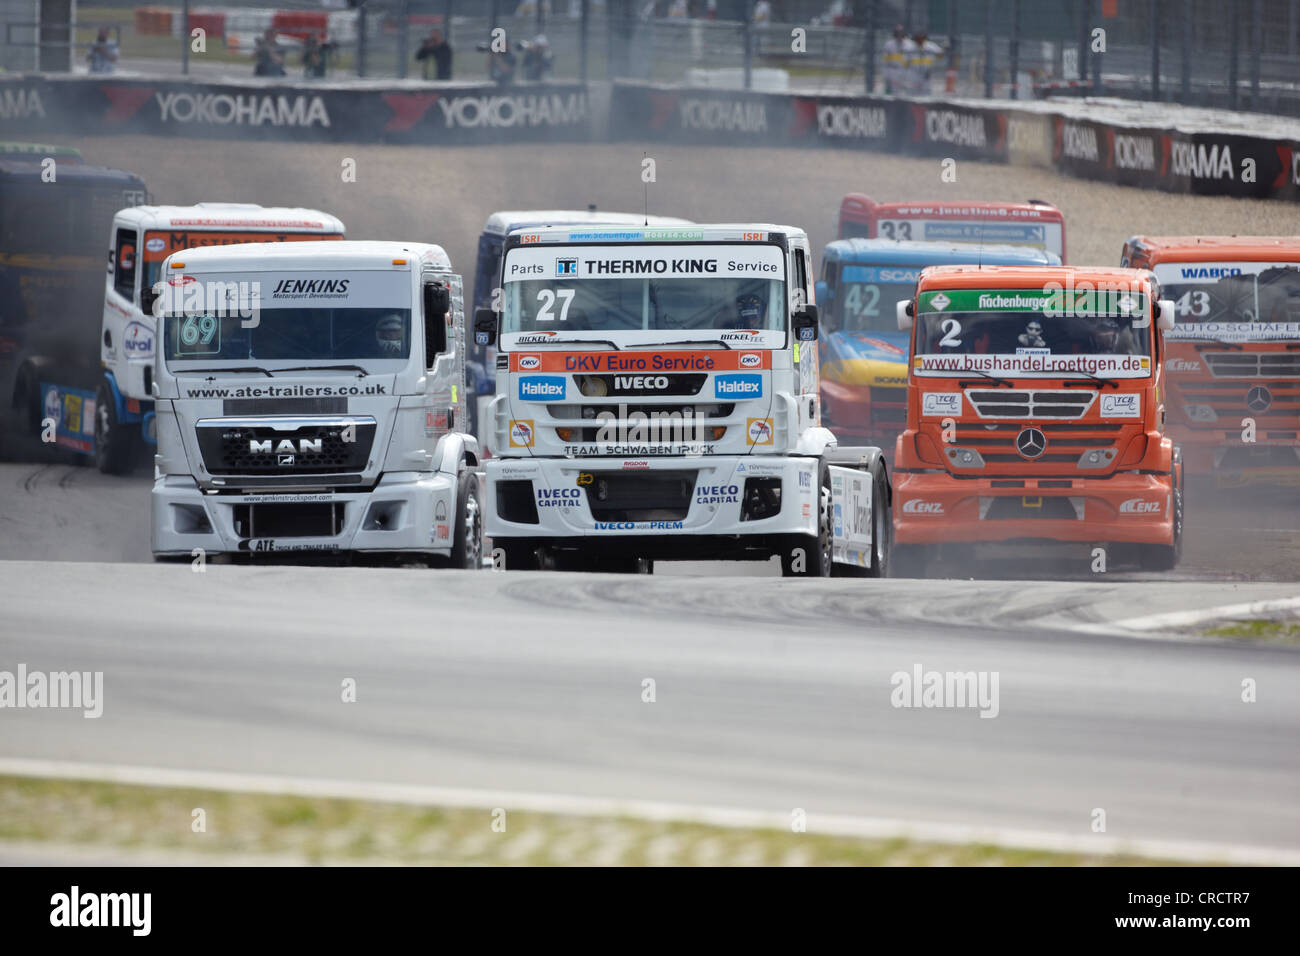 Les camions de course au Grand Prix camion sur la piste de course de Nürburgring, Rhénanie-Palatinat, Allemagne, Europe Banque D'Images